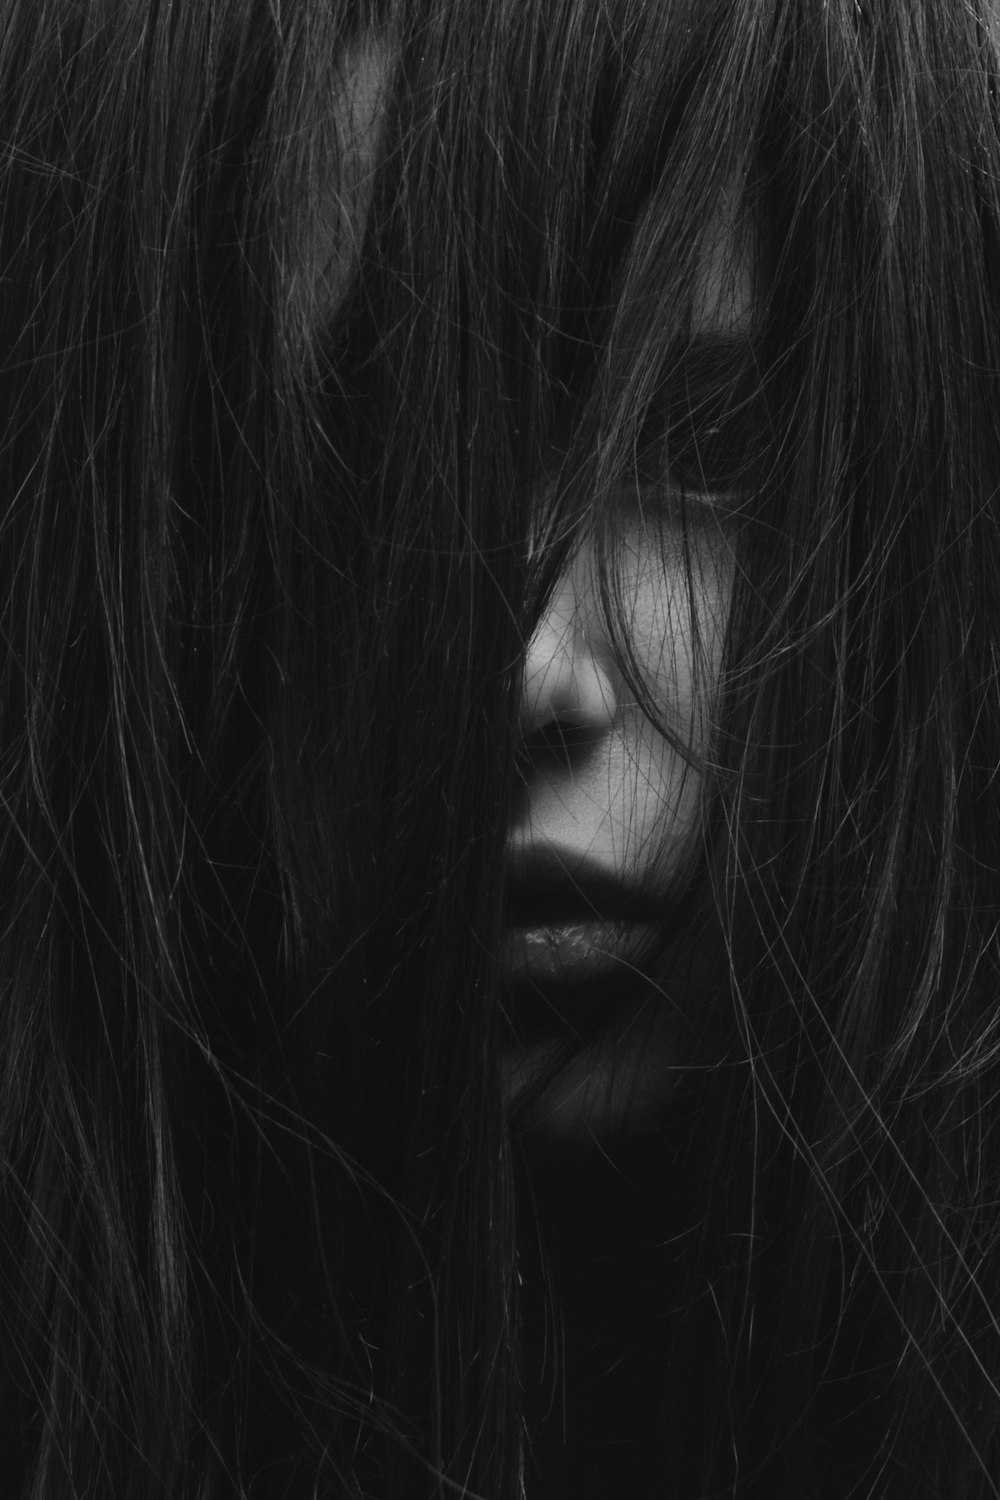 fotografia in scala di grigi di una ragazza che si copriva il viso con i capelli